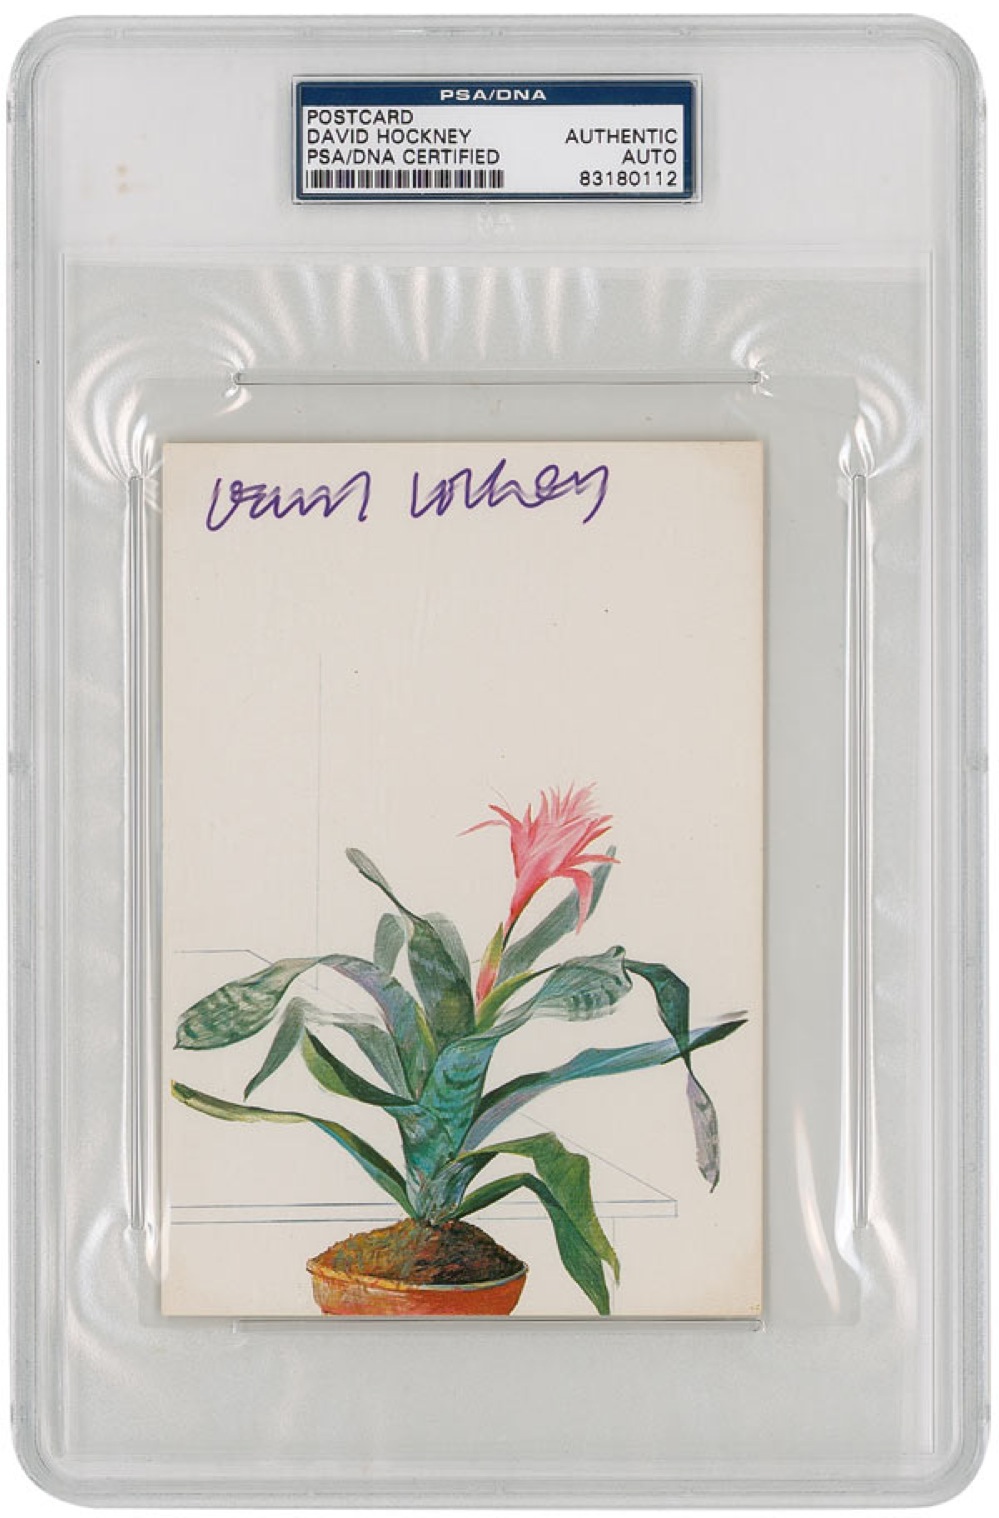 Lot #561 David Hockney